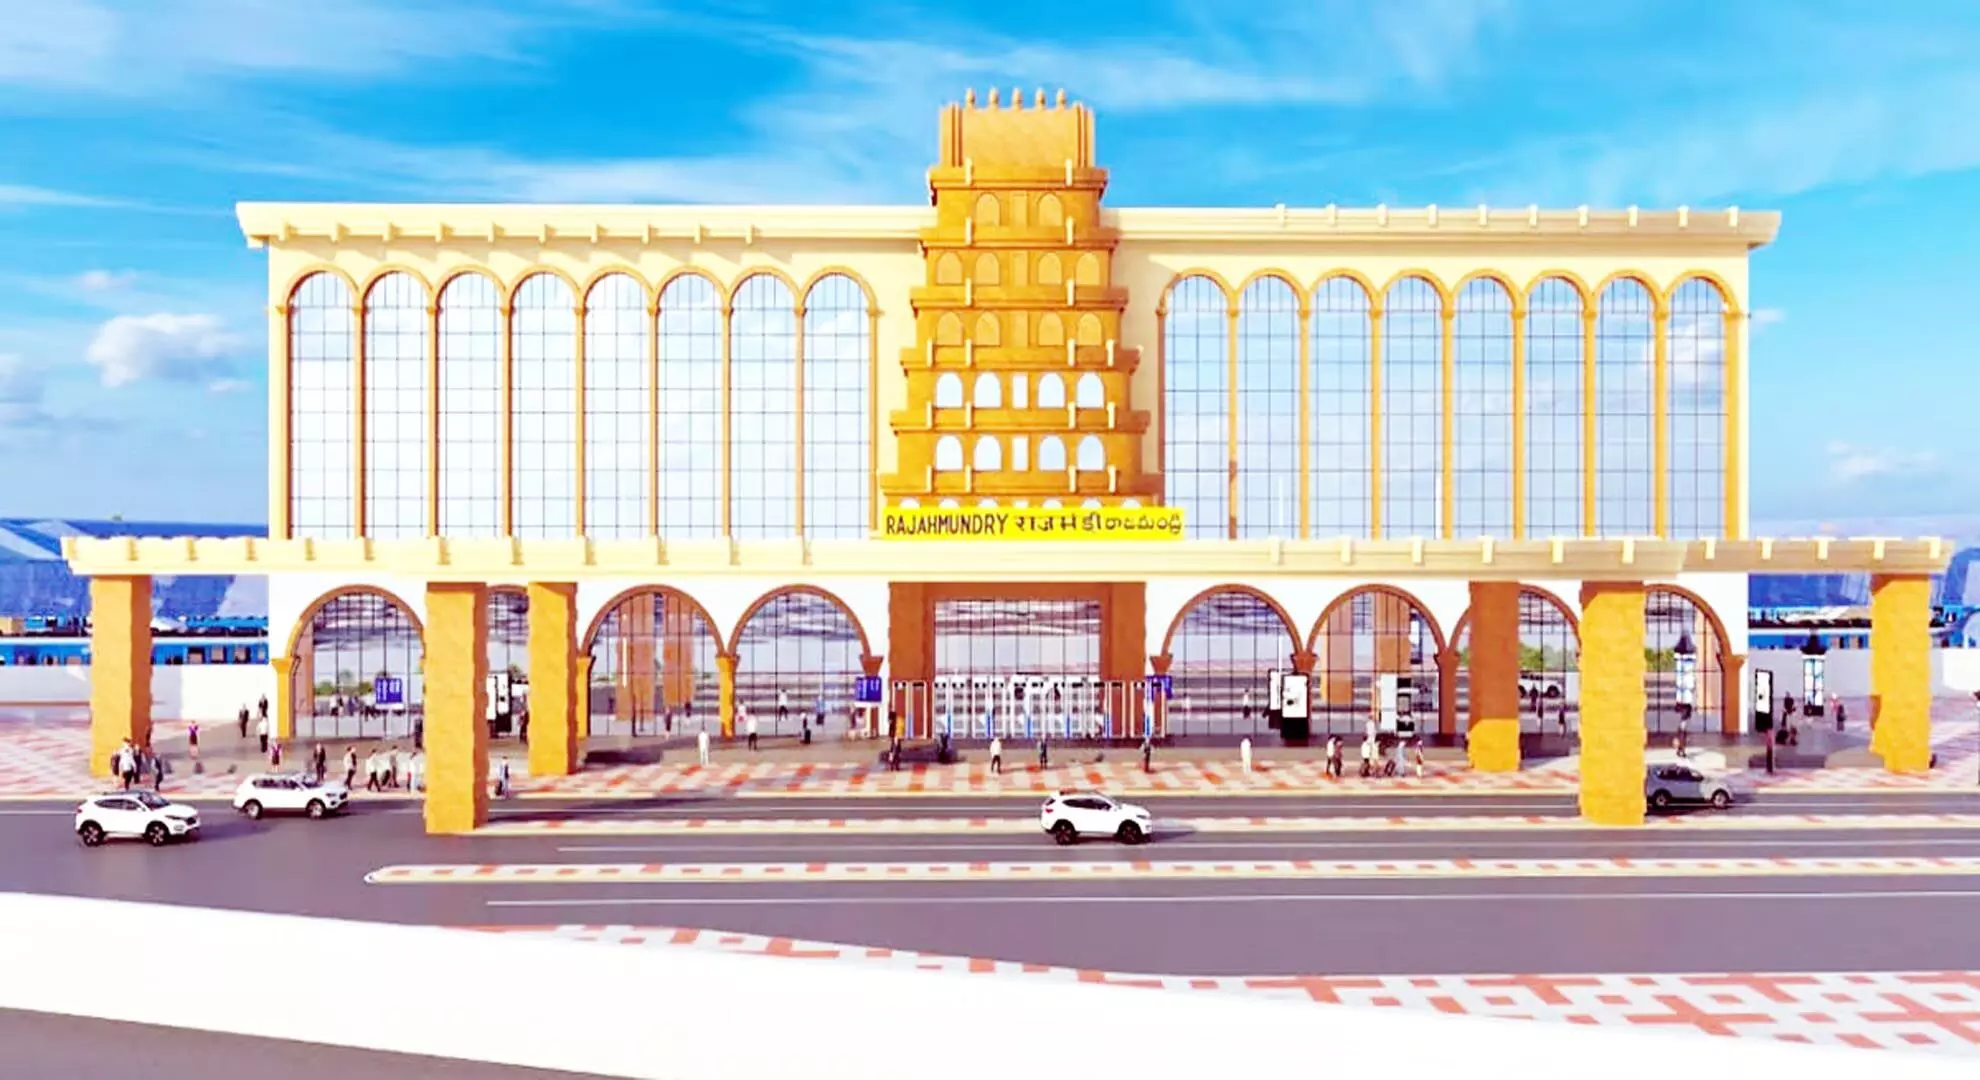 आंध्र प्रदेश में रेलवे स्टेशनों का बड़ा नवीनीकरण